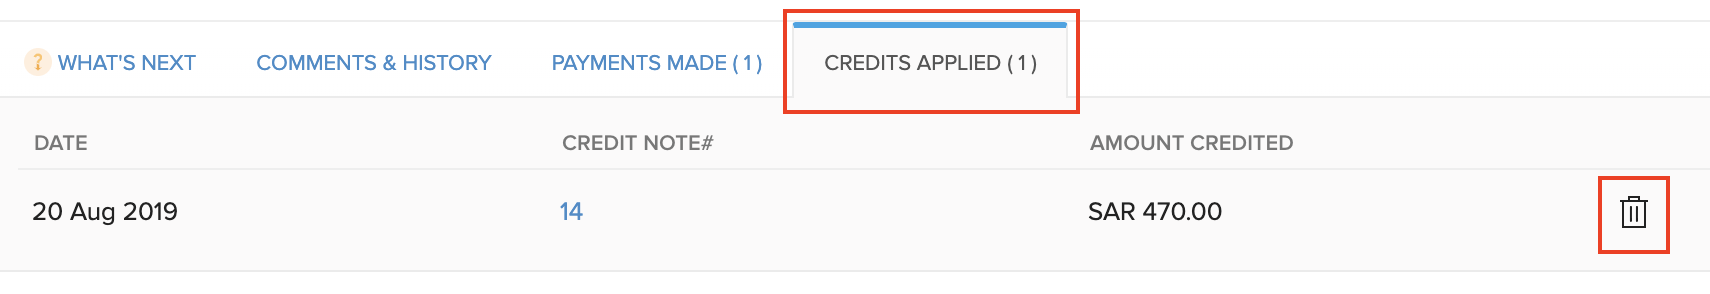 Delete Applied Credits